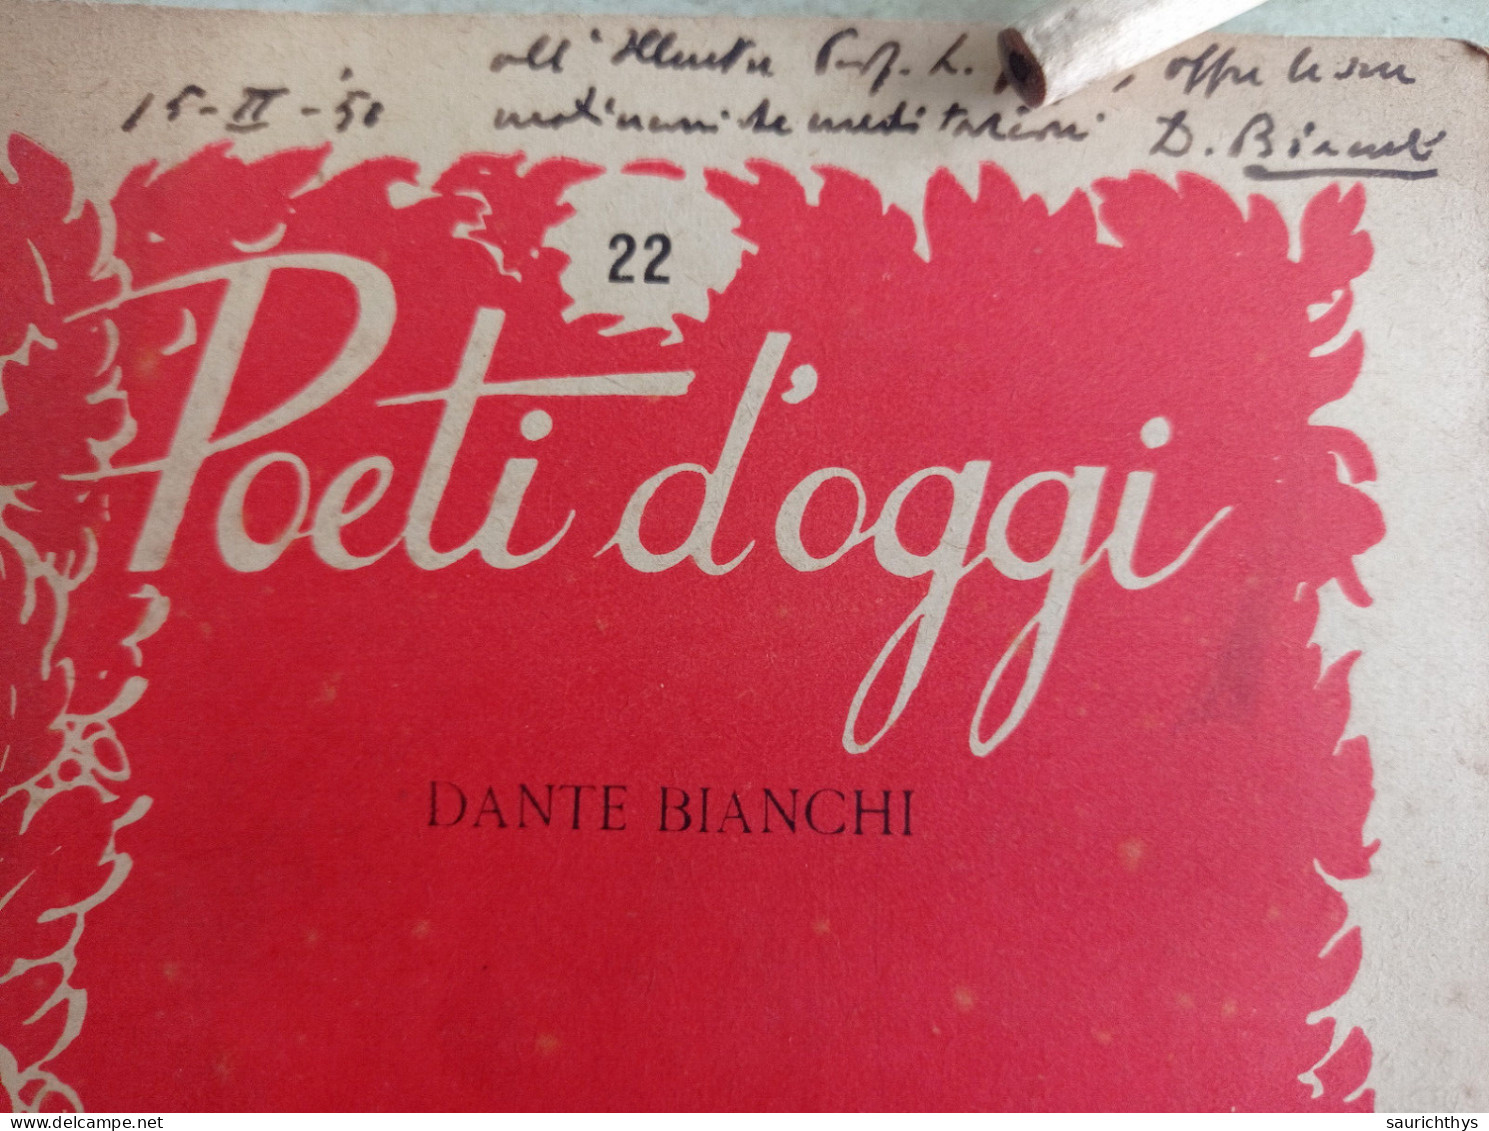 Poeti D'oggi Stralci Gastaldi Editore 1949 Autografo Di Dante Bianchi A Noto Accademico - Poésie